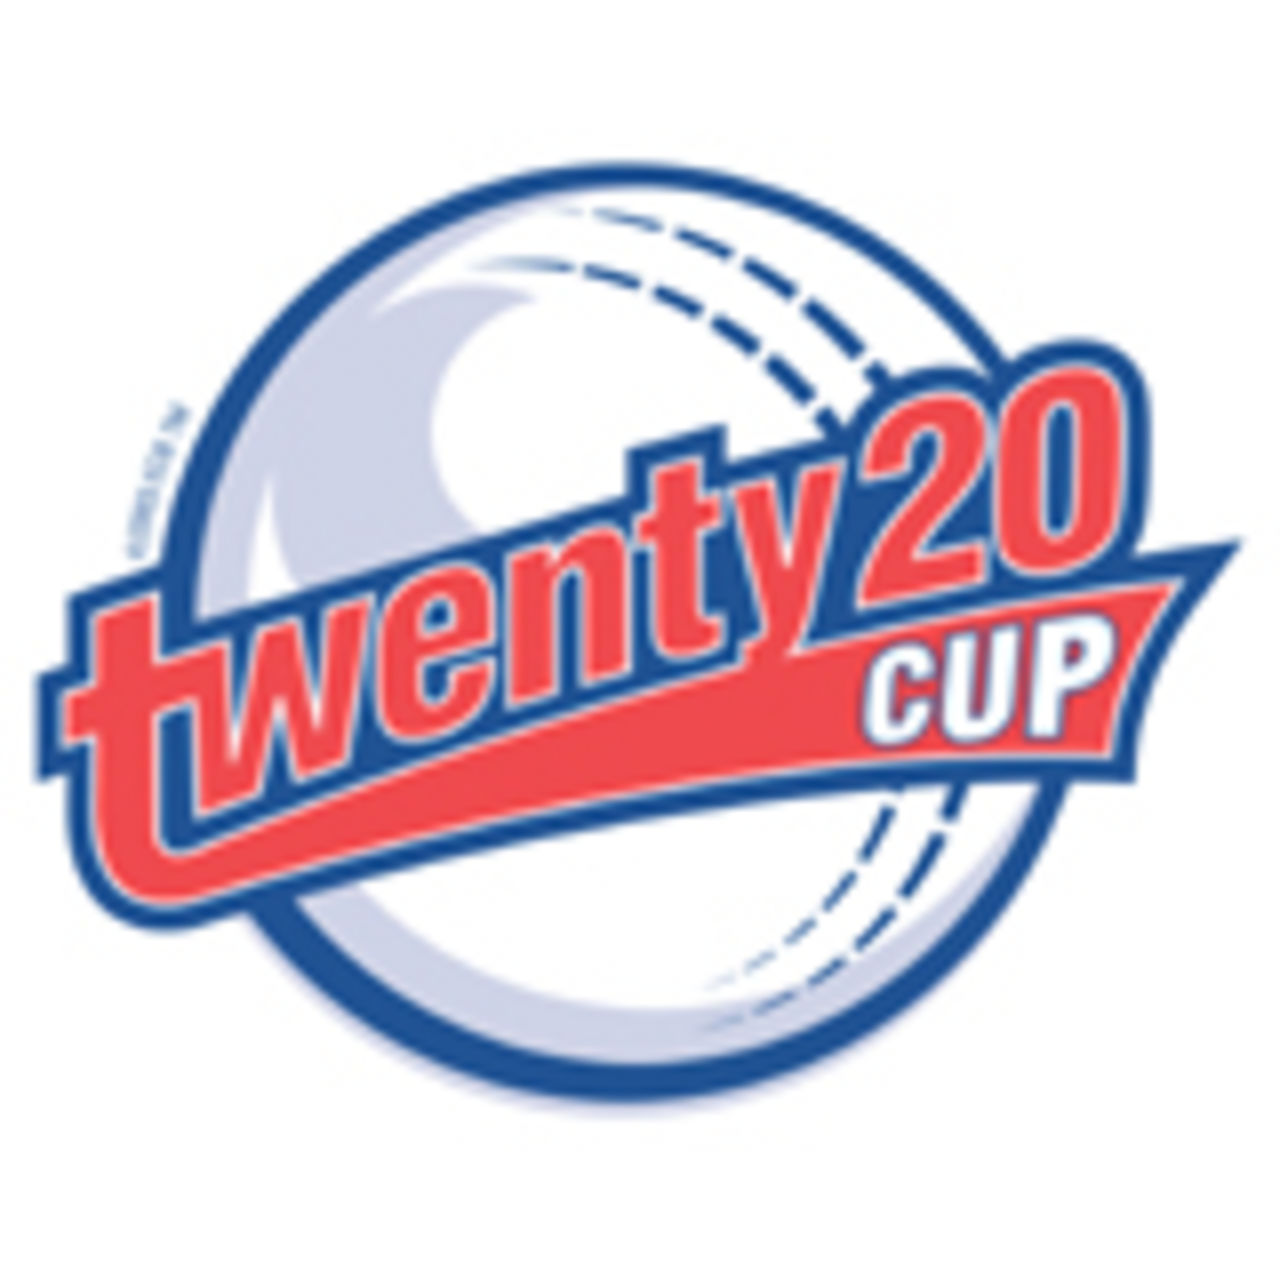 Twenty20 Cup logo